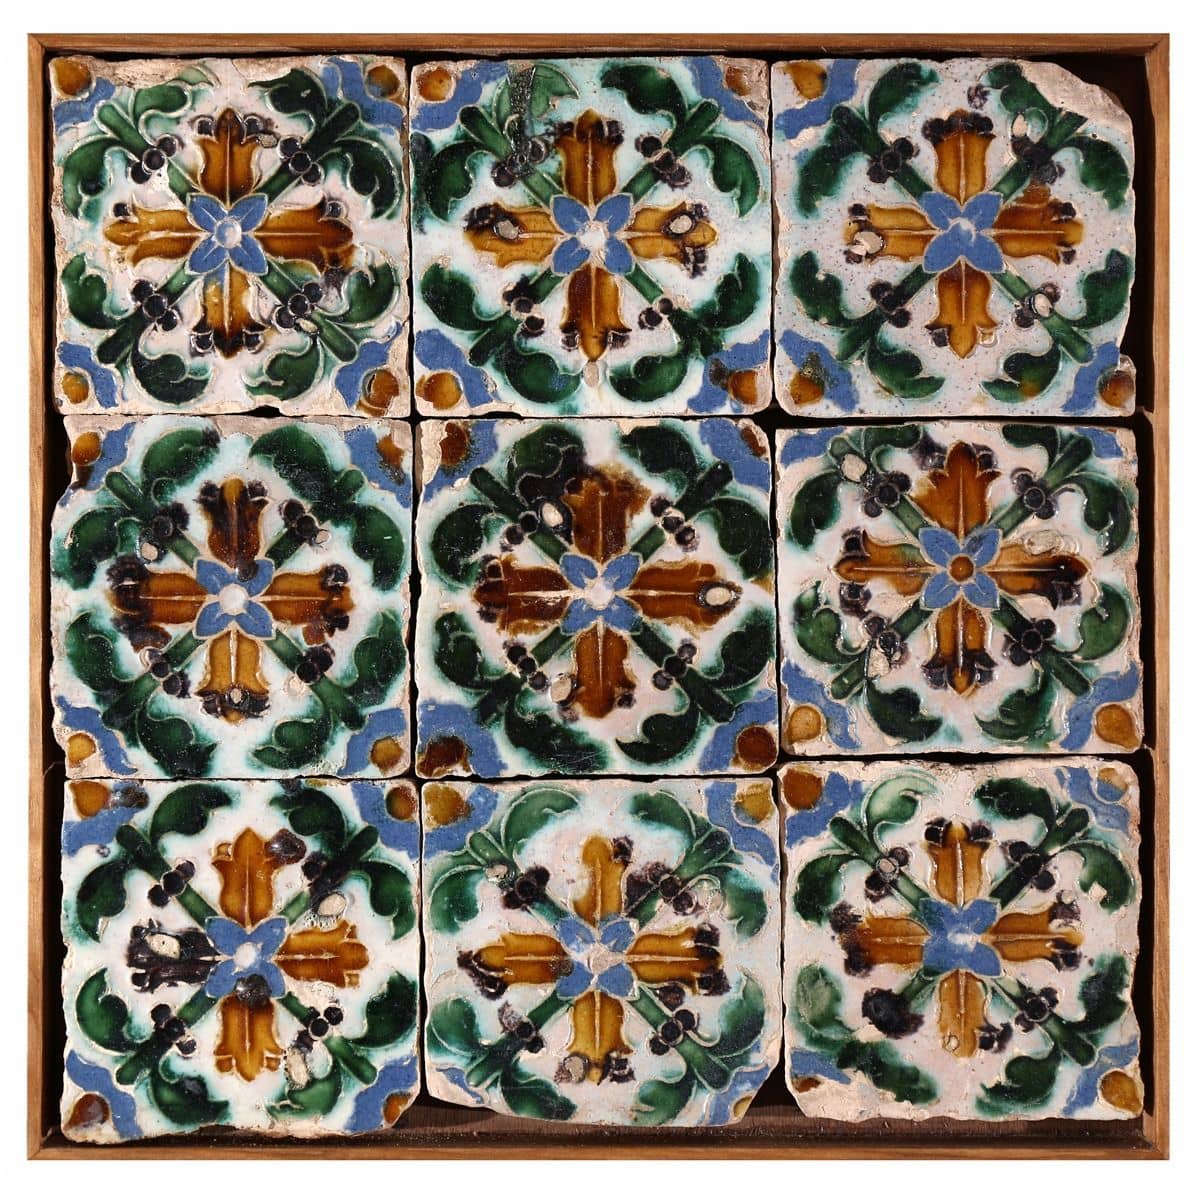 Panneau d'azulejos hispano-arabes du XVIe siècle que vous pouvez acheter chez D'Orey à Lisbonne